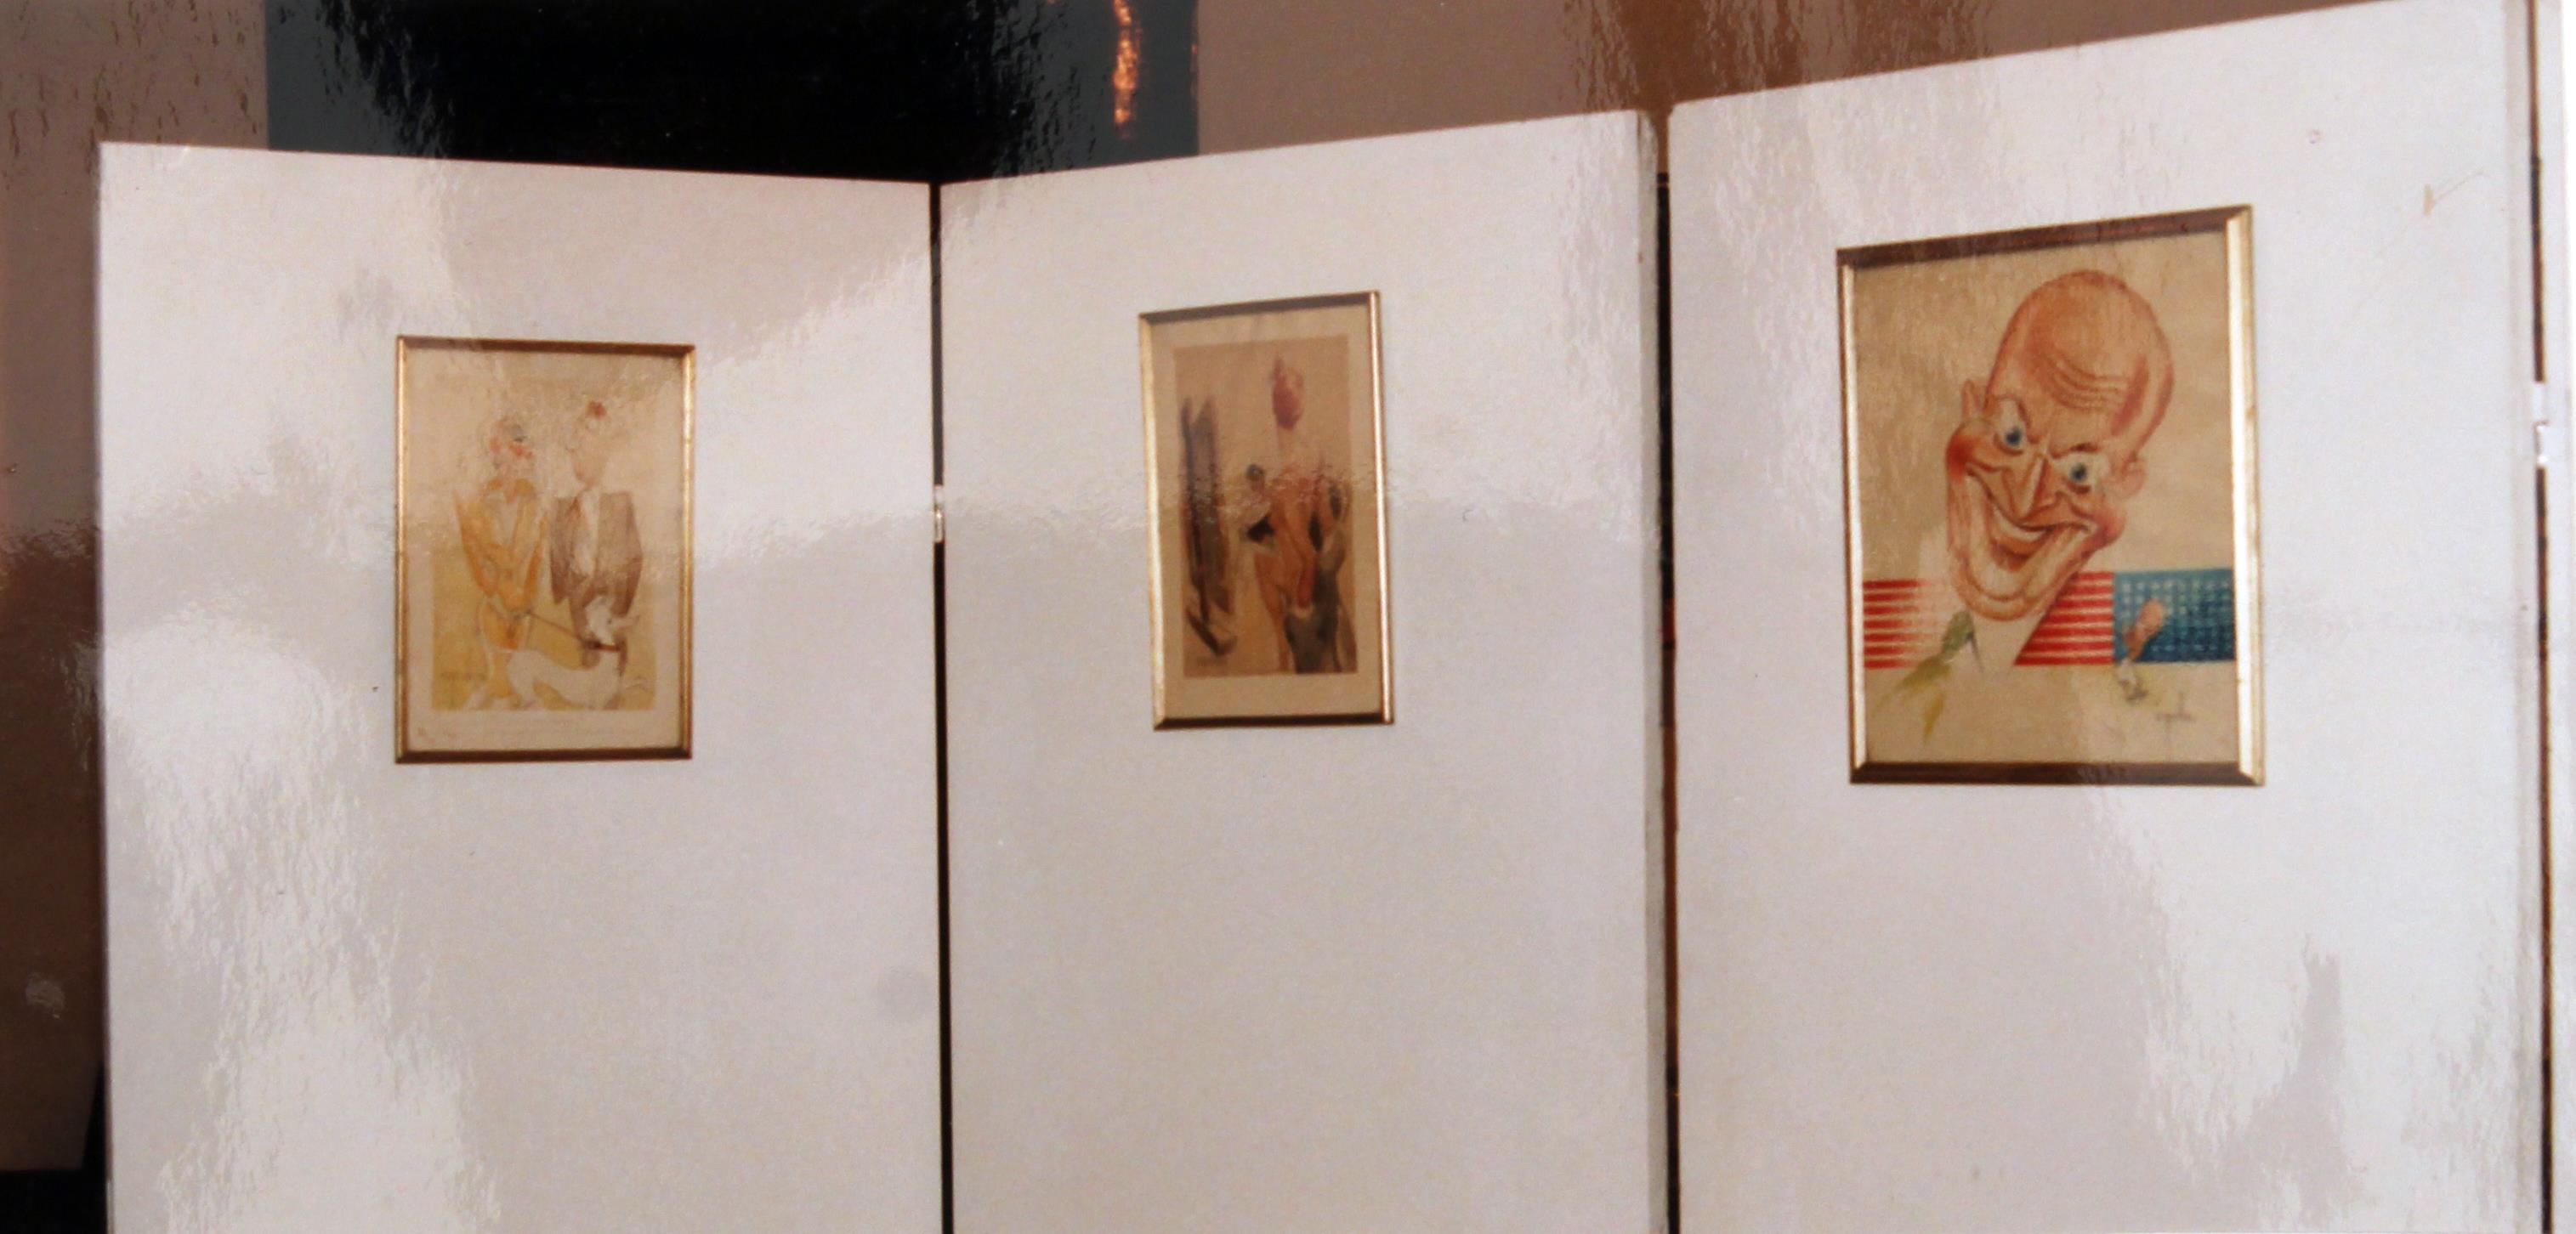 1ª Exposição "Documental" póstuma : "Uma Obra - Cruz Caldas" : vários aspectos e pormenores da exposição